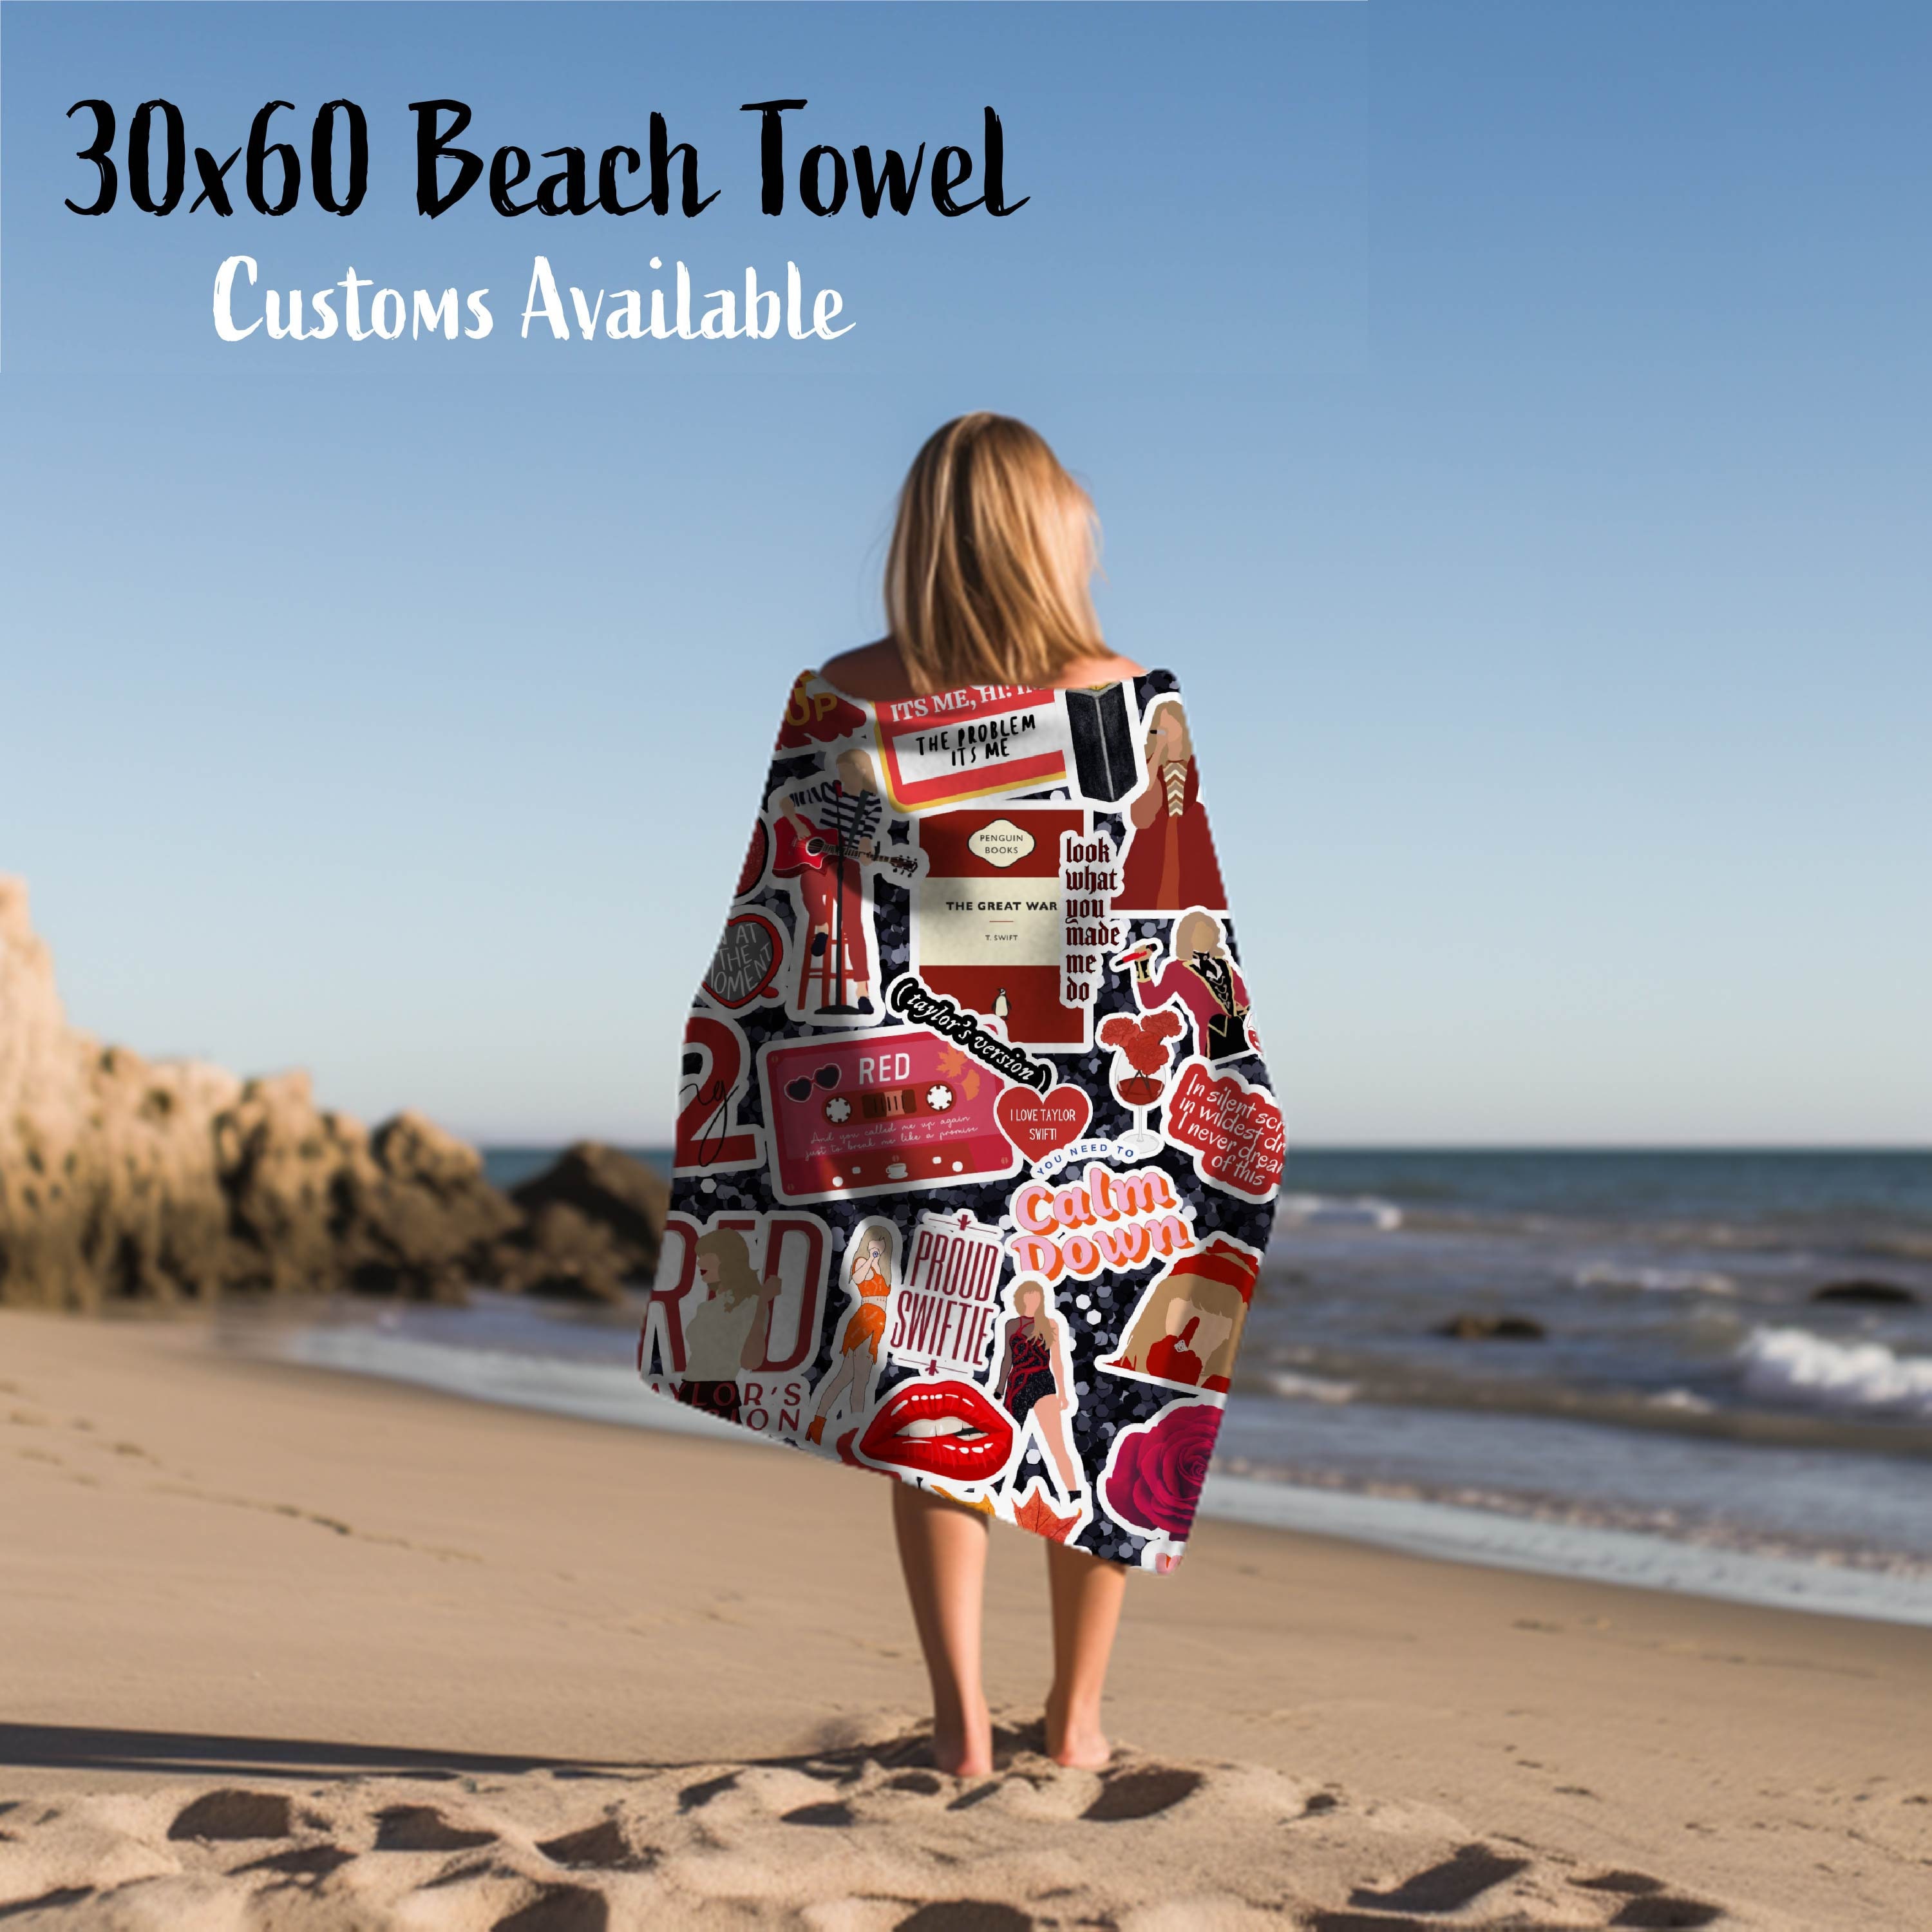 Taylor Beach Towel